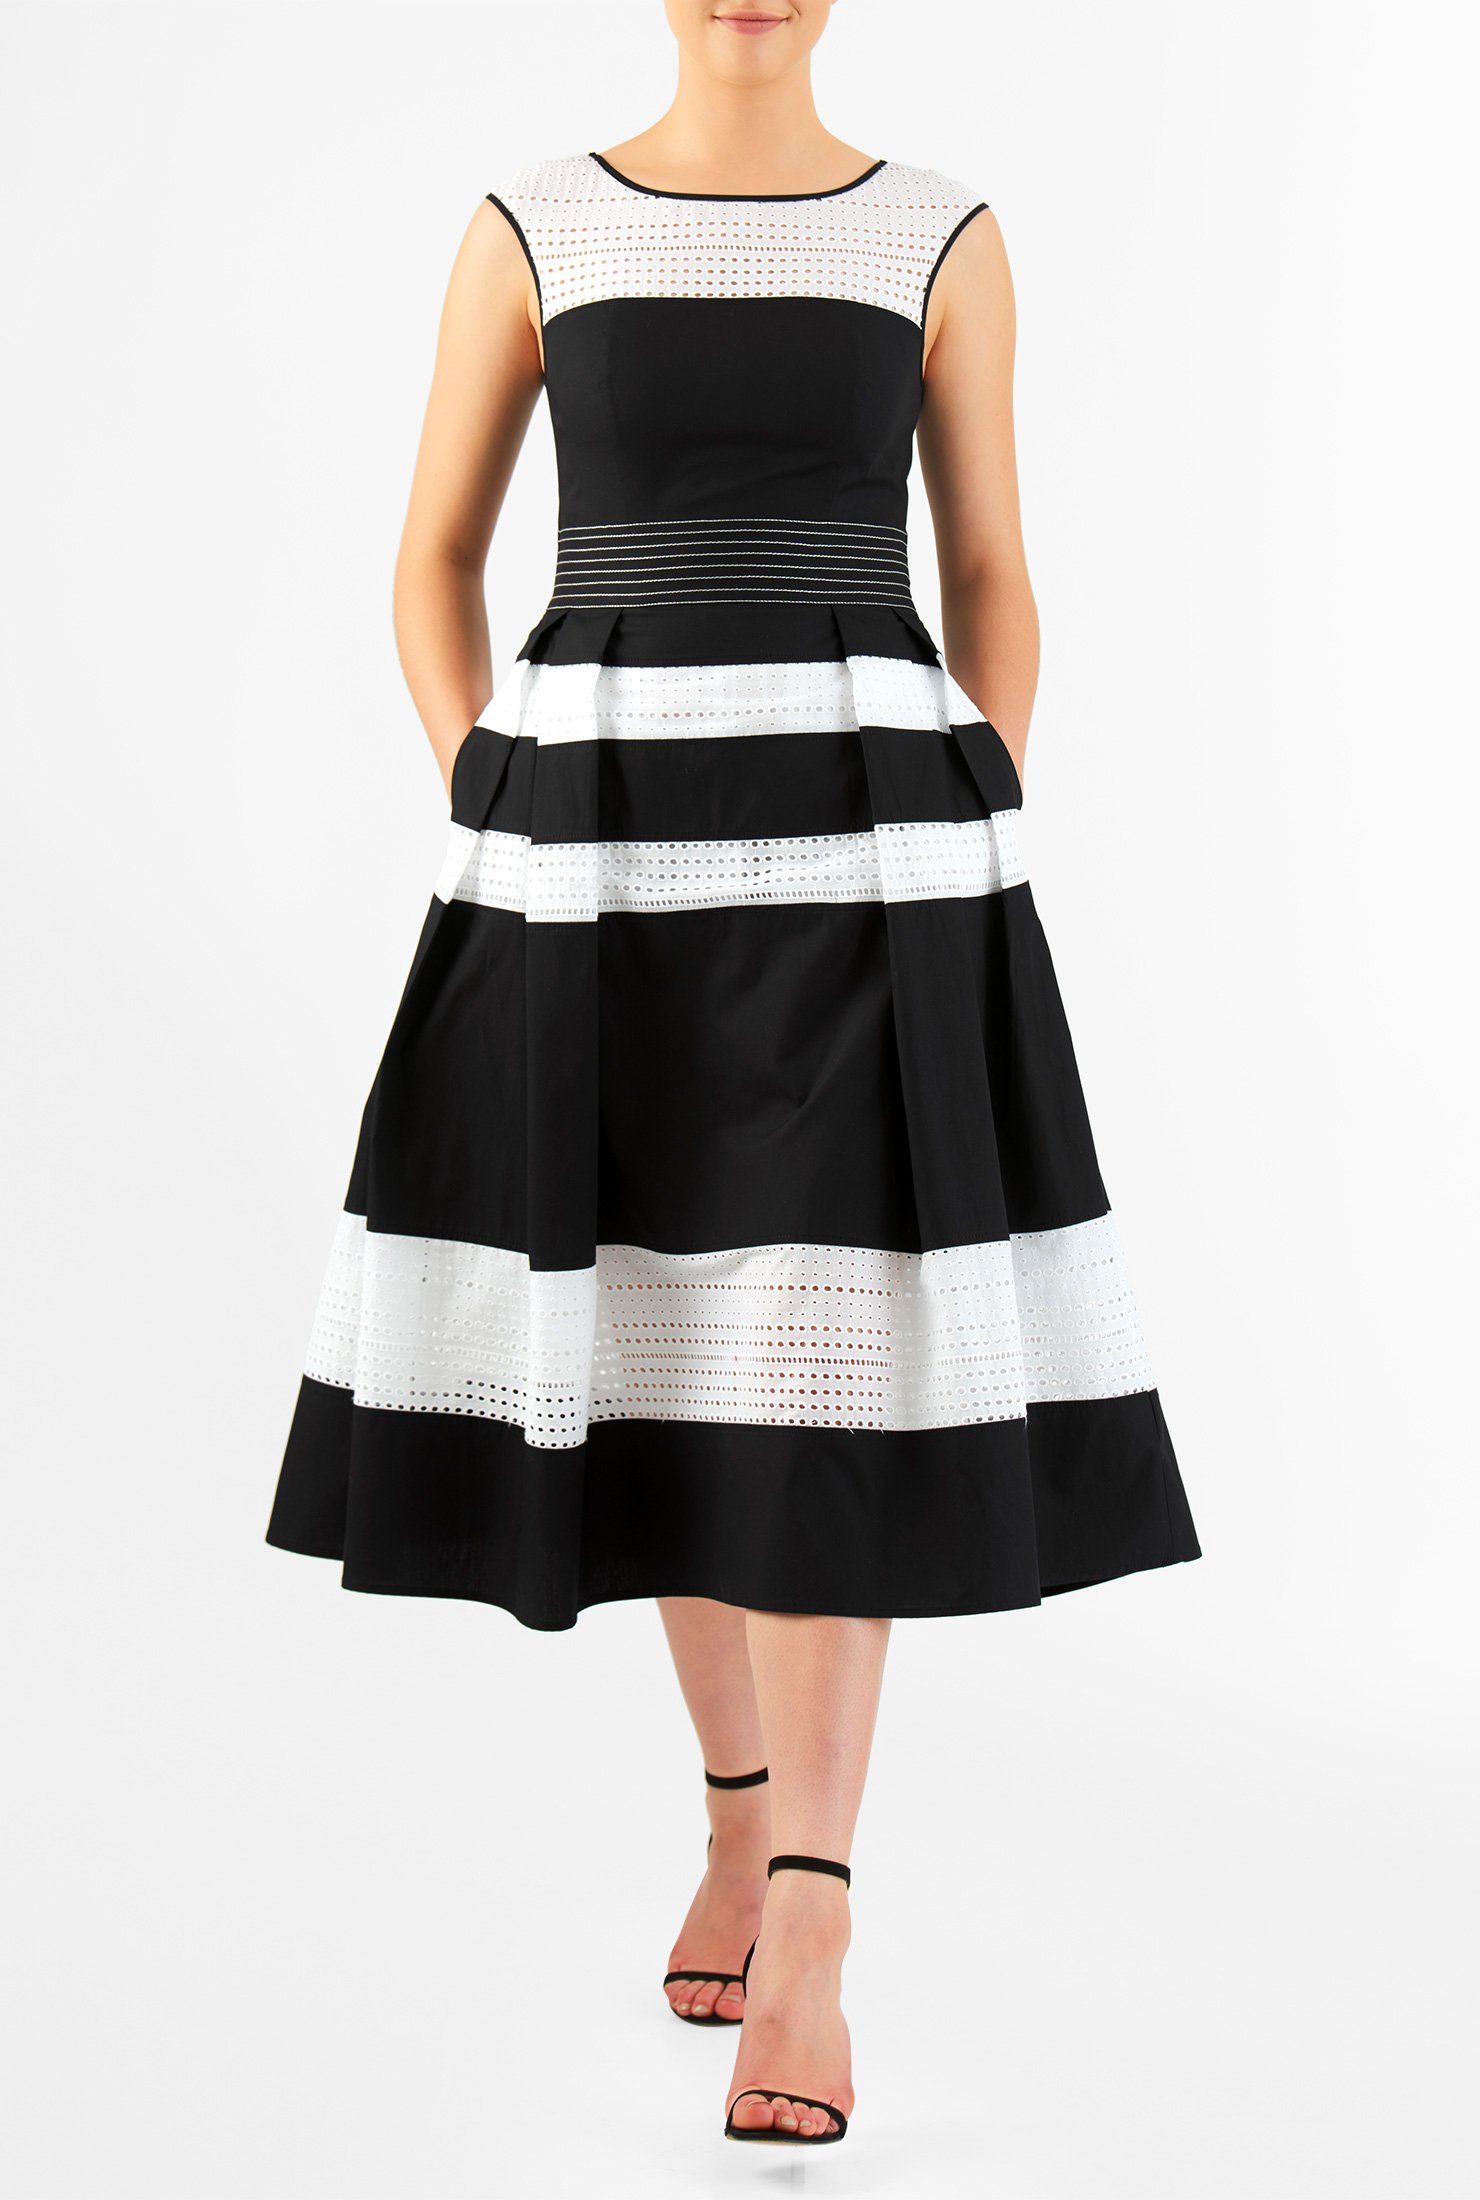 Shop Eyelet cotton banded stripe poplin dress | eShakti